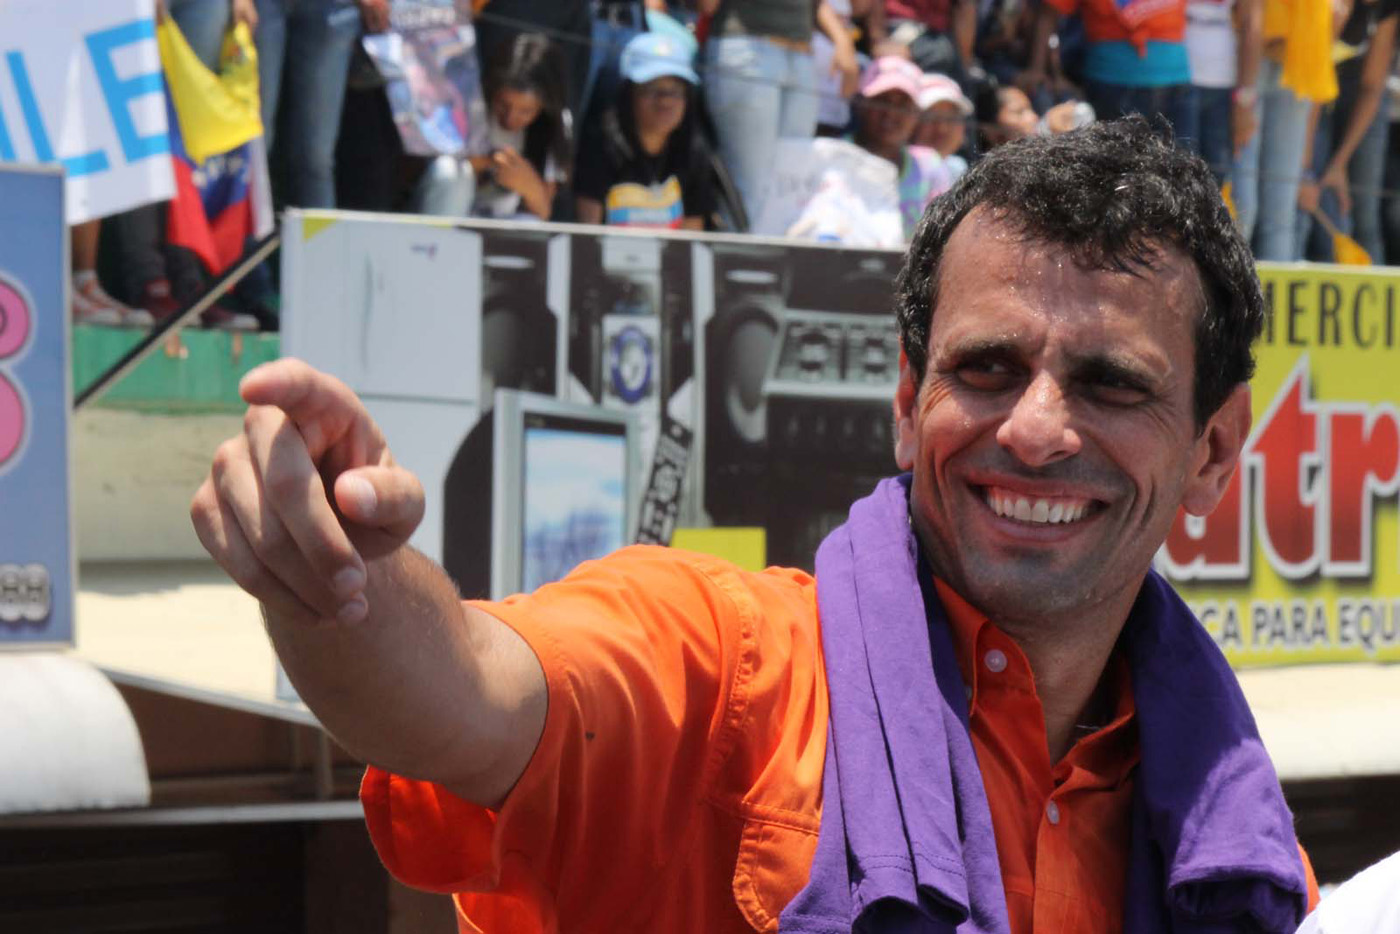 Lo mejor de @hcapriles en Apure (Fotos)